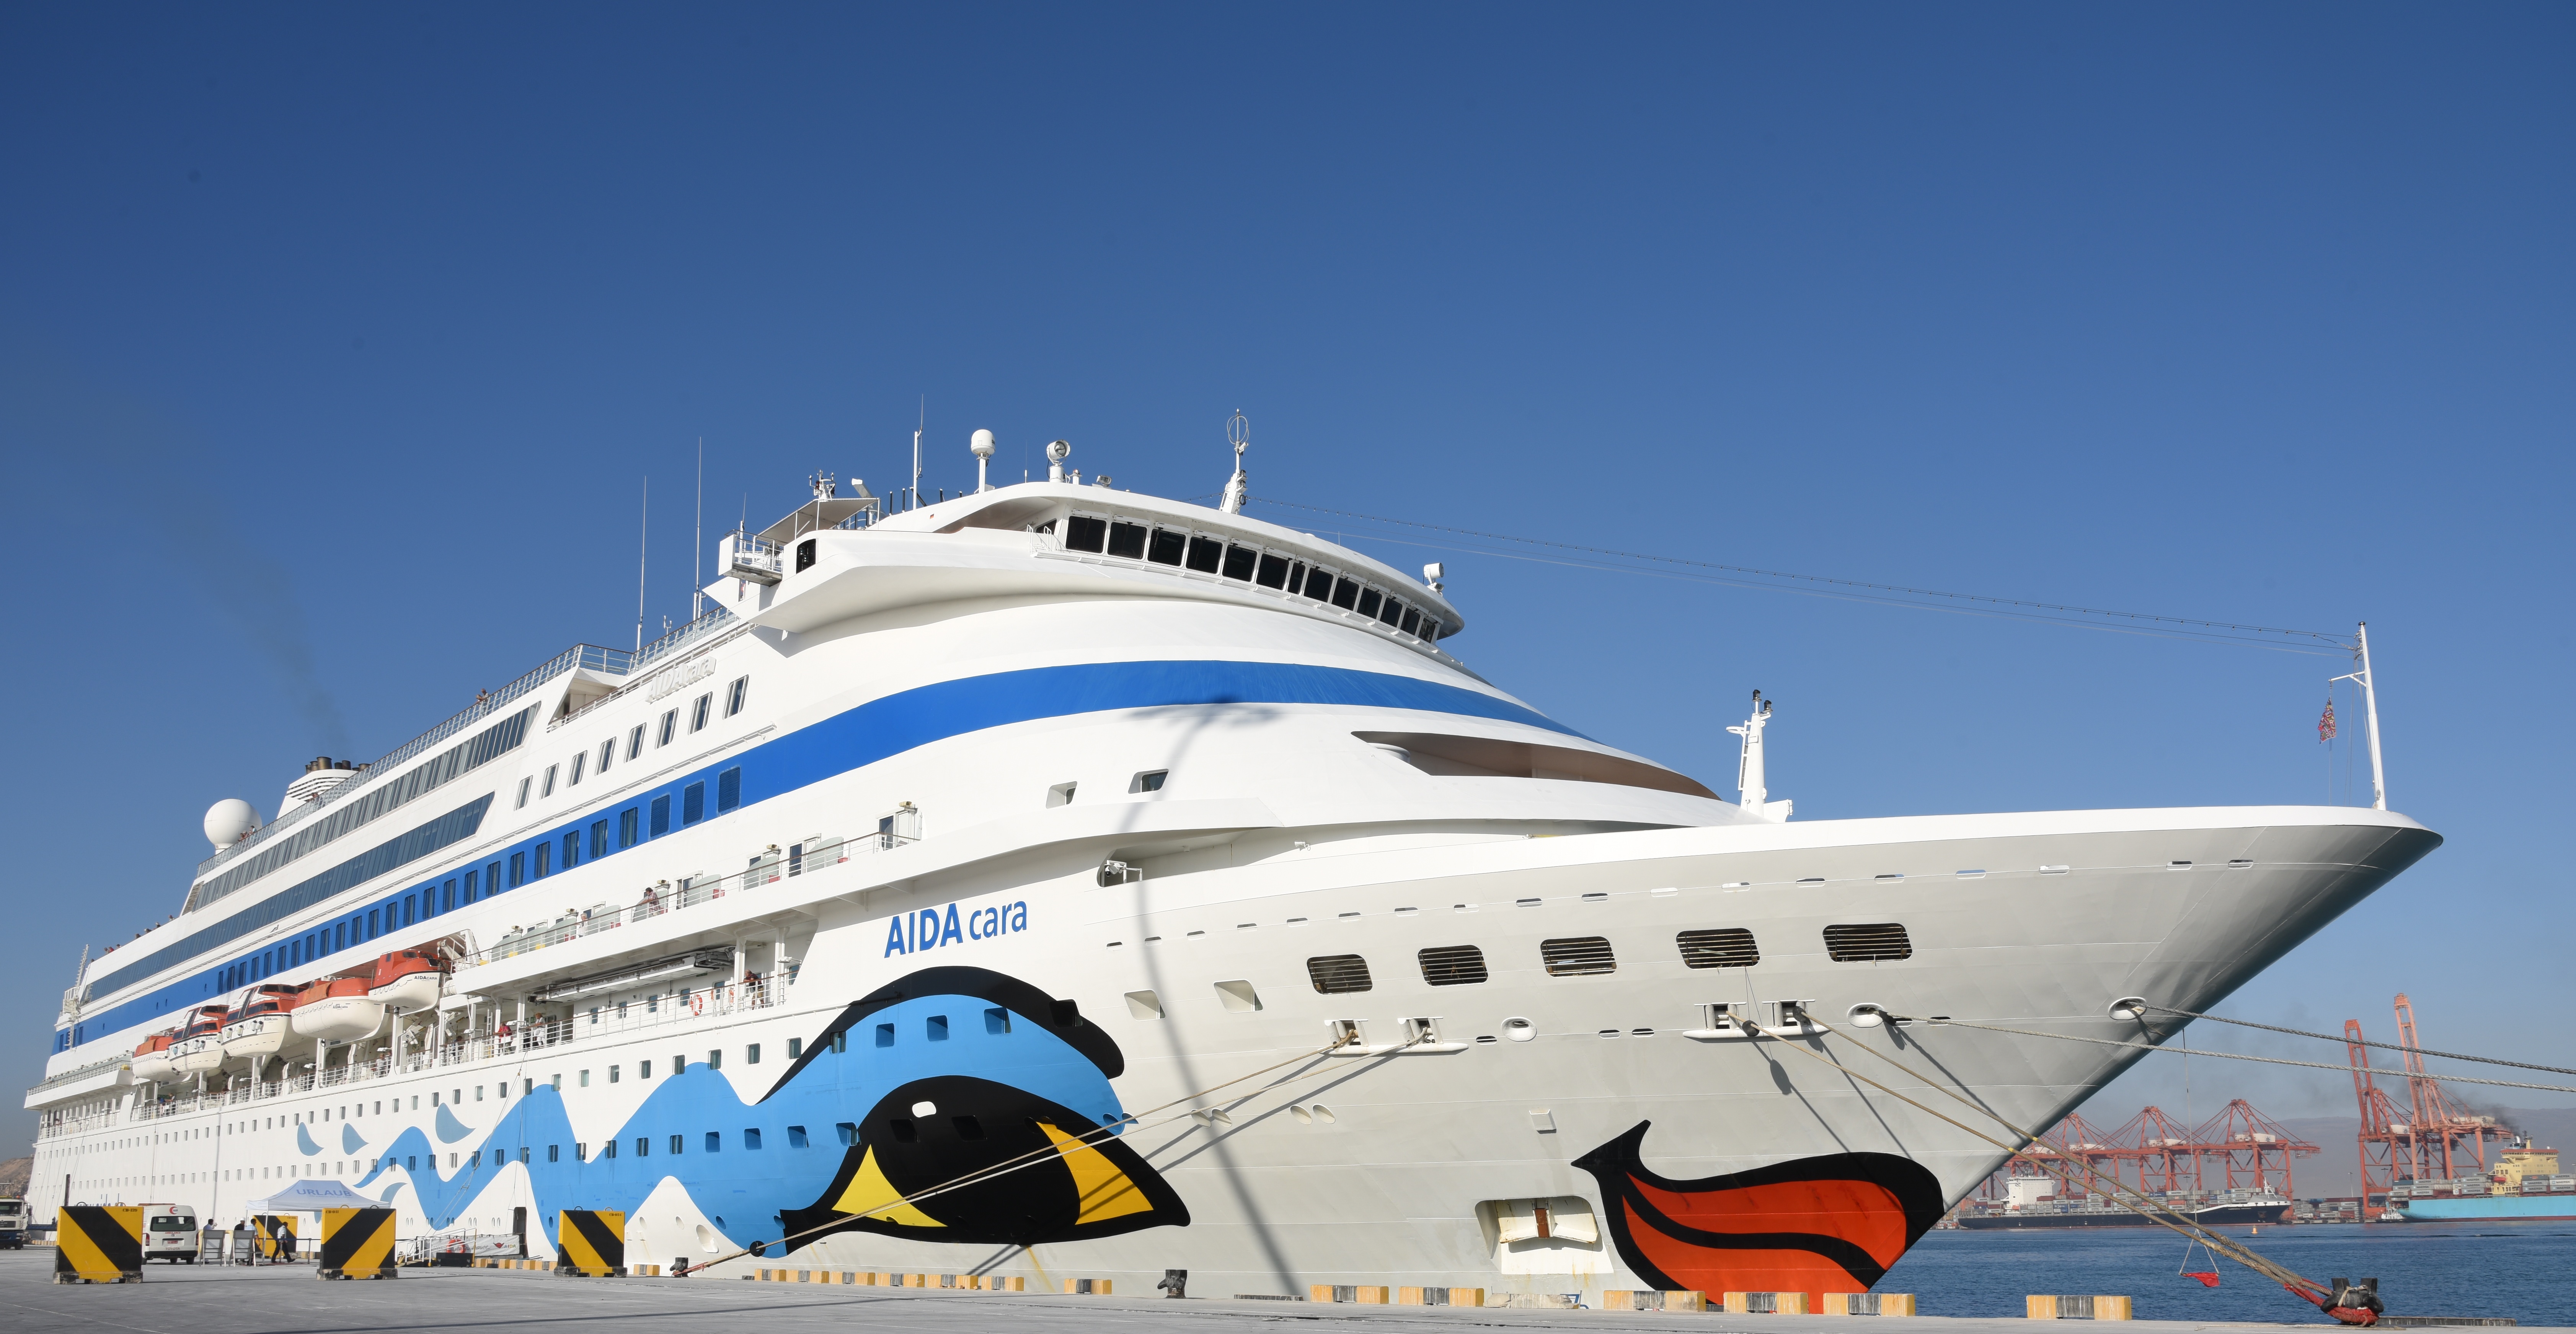 السفينة السياحية "ايدا كارا" تزور ميناء صلالة